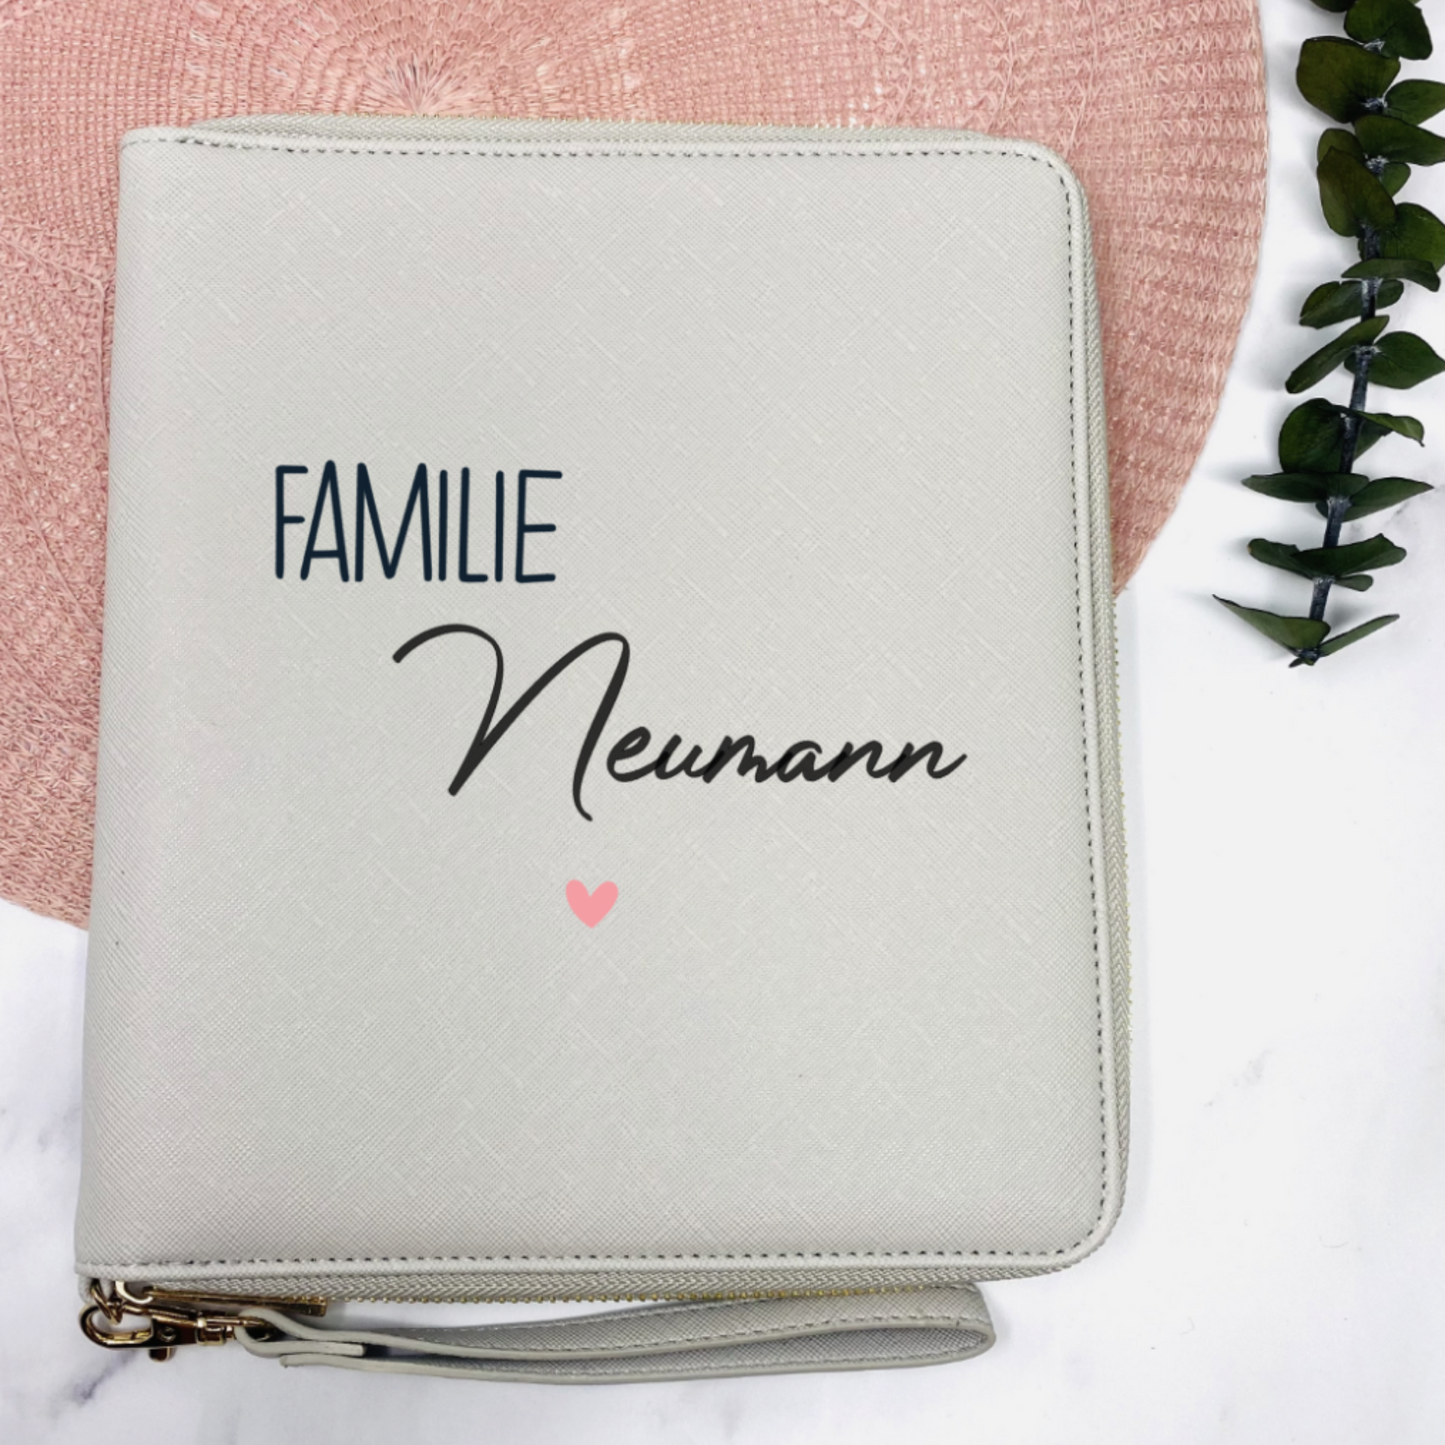 Kopie von Familien Organizer in grau personalisiert mit Familie und Name - Geschenkidee für Familie, U-heft, Impfpass - für Unterlagen und mehr